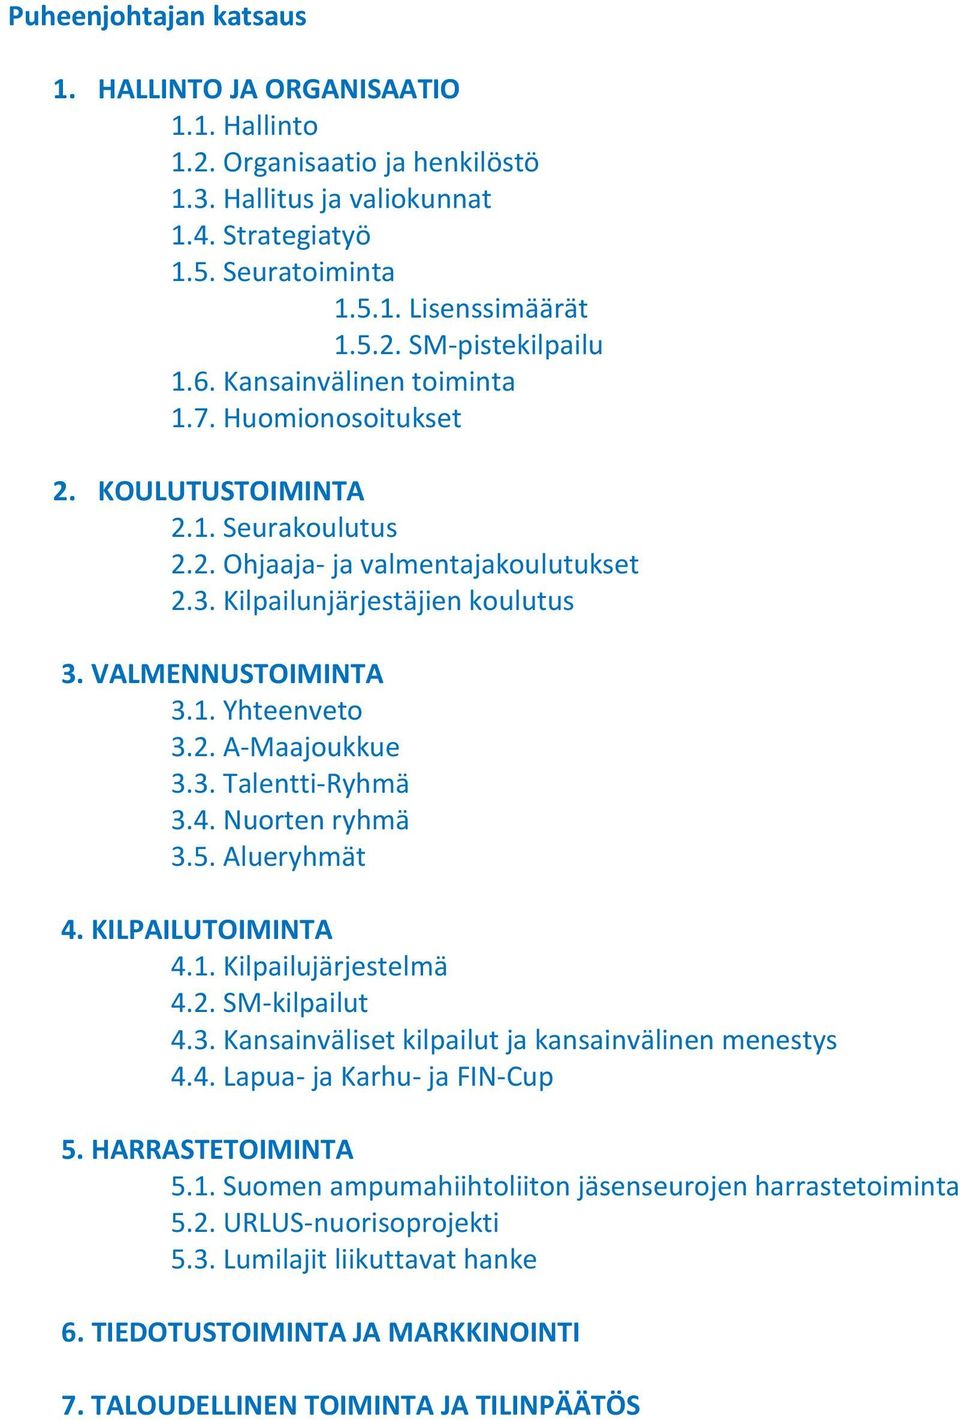 2. A-Maajoukkue 3.3. Talentti-Ryhmä 3.4. Nuorten ryhmä 3.5. Alueryhmät 4. KILPAILUTOIMINTA 4.1. Kilpailujärjestelmä 4.2. SM-kilpailut 4.3. Kansainväliset kilpailut ja kansainvälinen menestys 4.4. Lapua- ja Karhu- ja FIN-Cup 5.